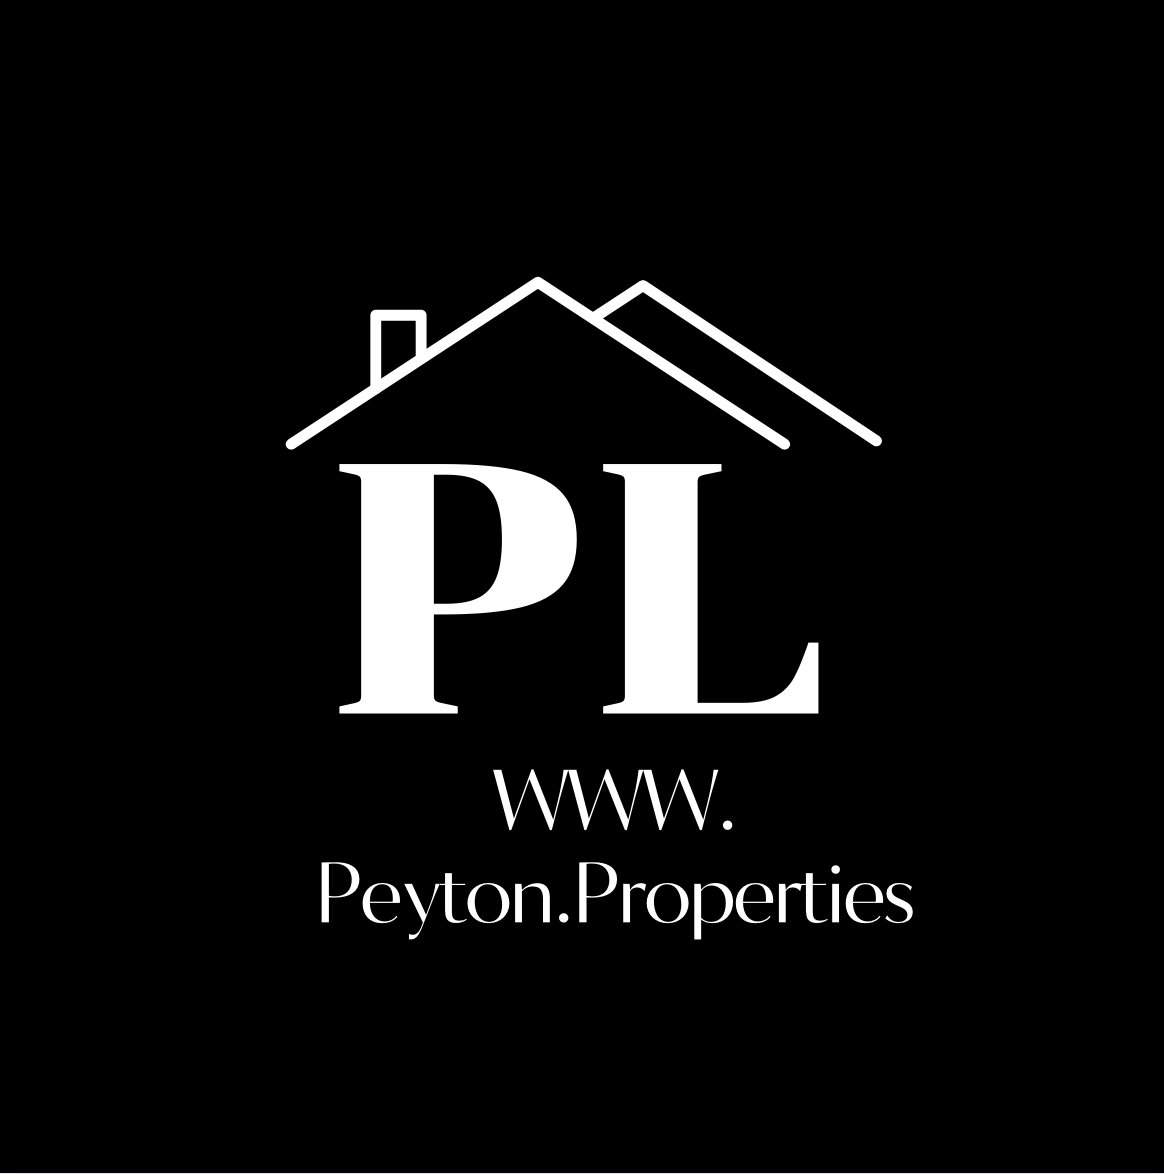 Peyton.Properties